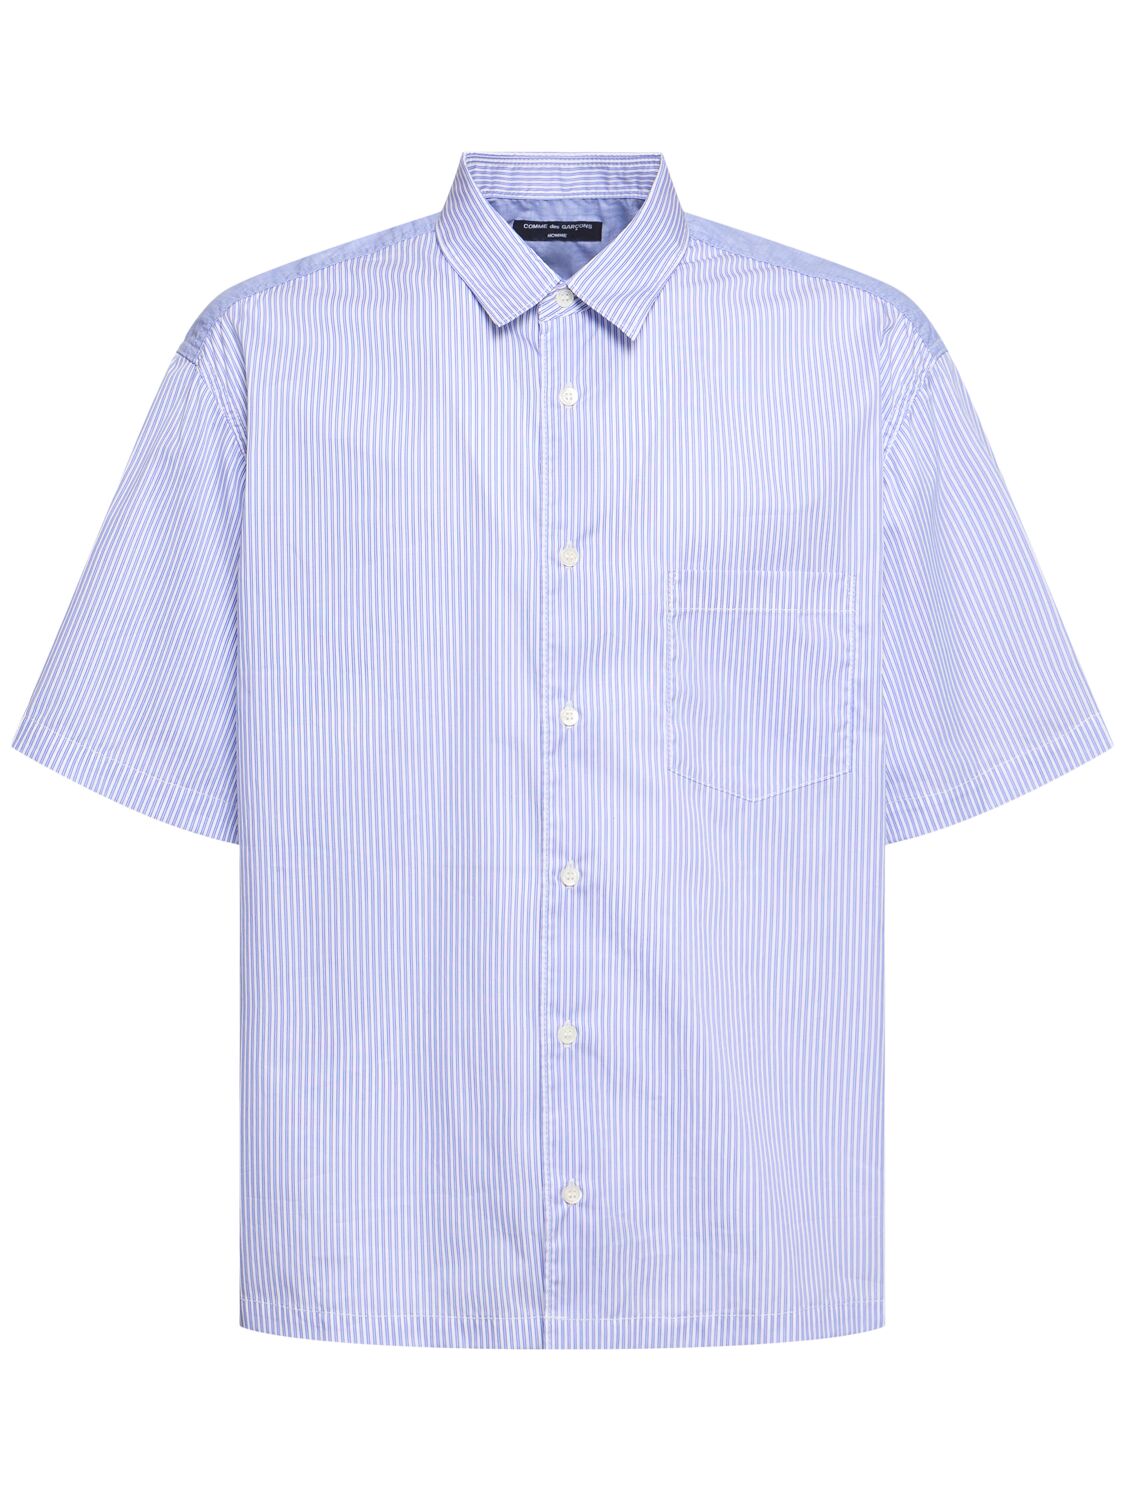 Cotton S/s Shirt